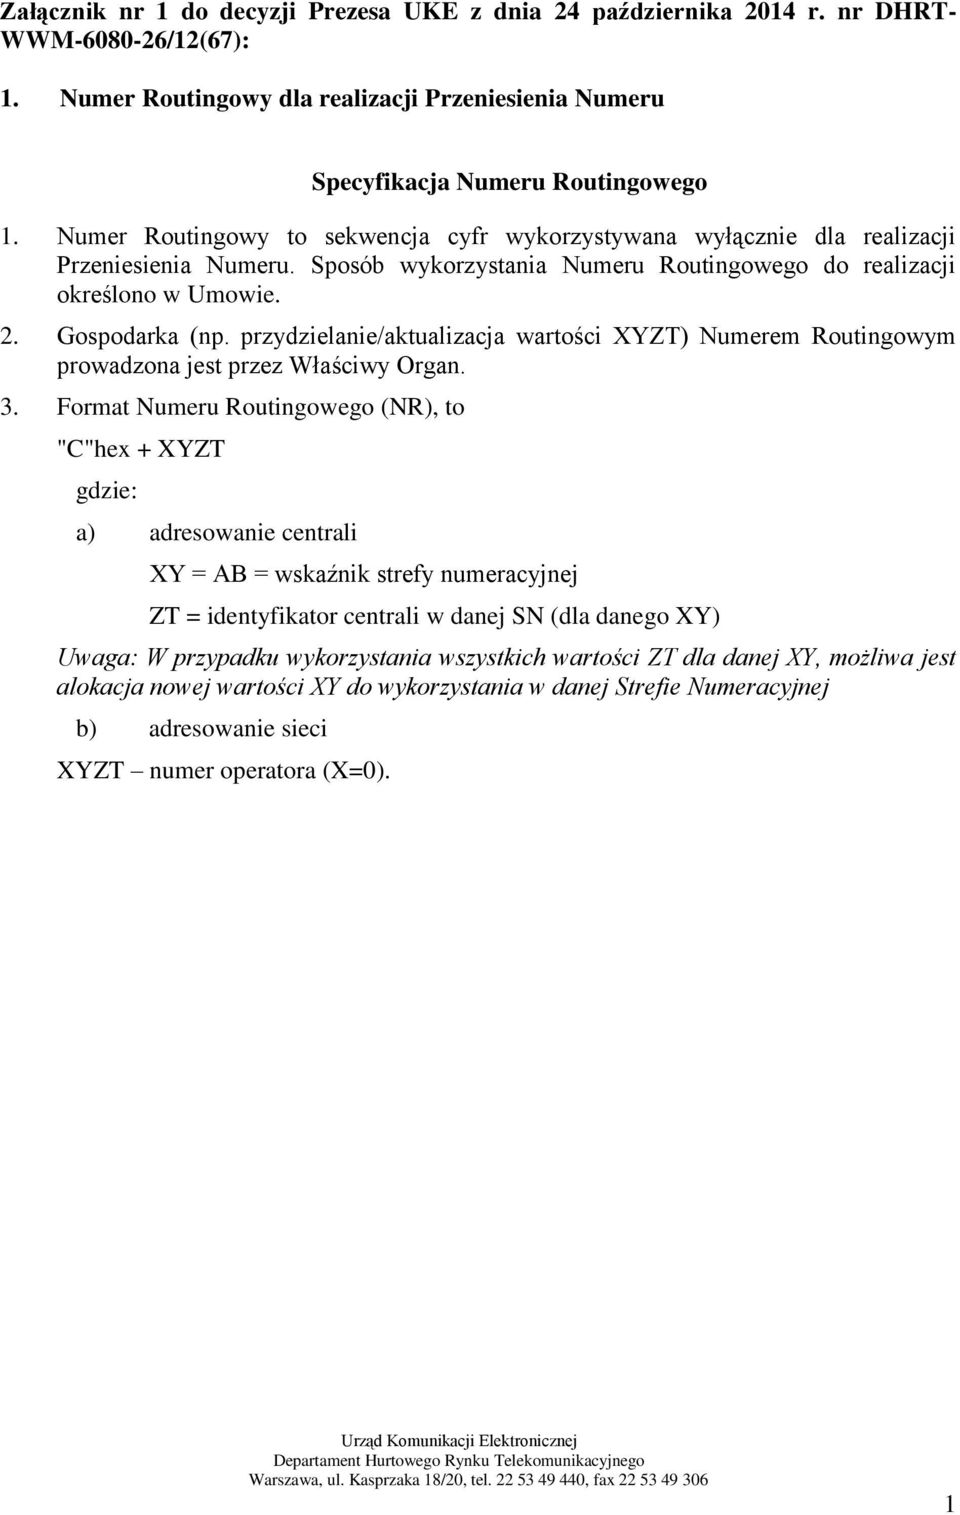 przydzielanie/aktualizacja wartości XYZT) Numerem Routingowym prowadzona jest przez Właściwy Organ. 3.